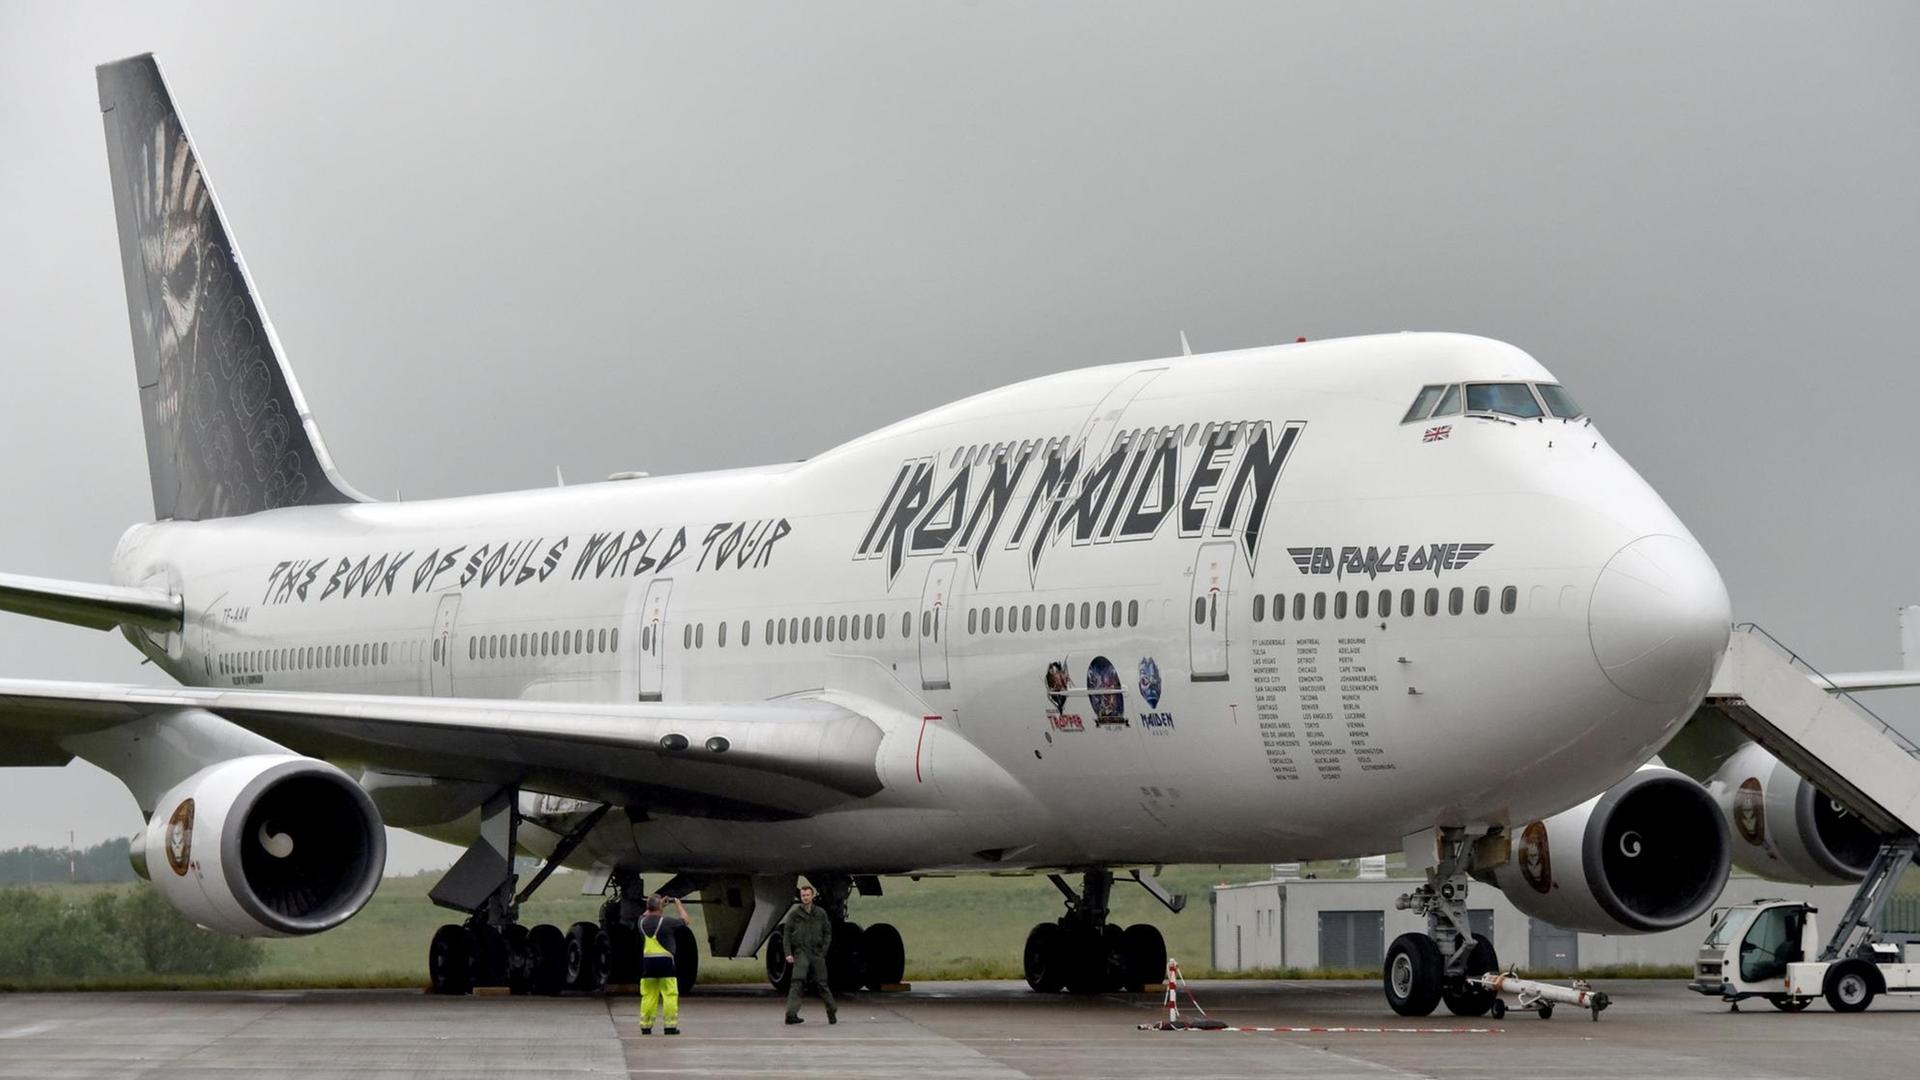 Die private Boeing 747 "Ed Force One" der Heavy-Metal-Band Iron Maiden steht in Schönefeld (Brandenburg) auf dem Messegelände der Internationalen Luft- und Raumfahrtausstellung.